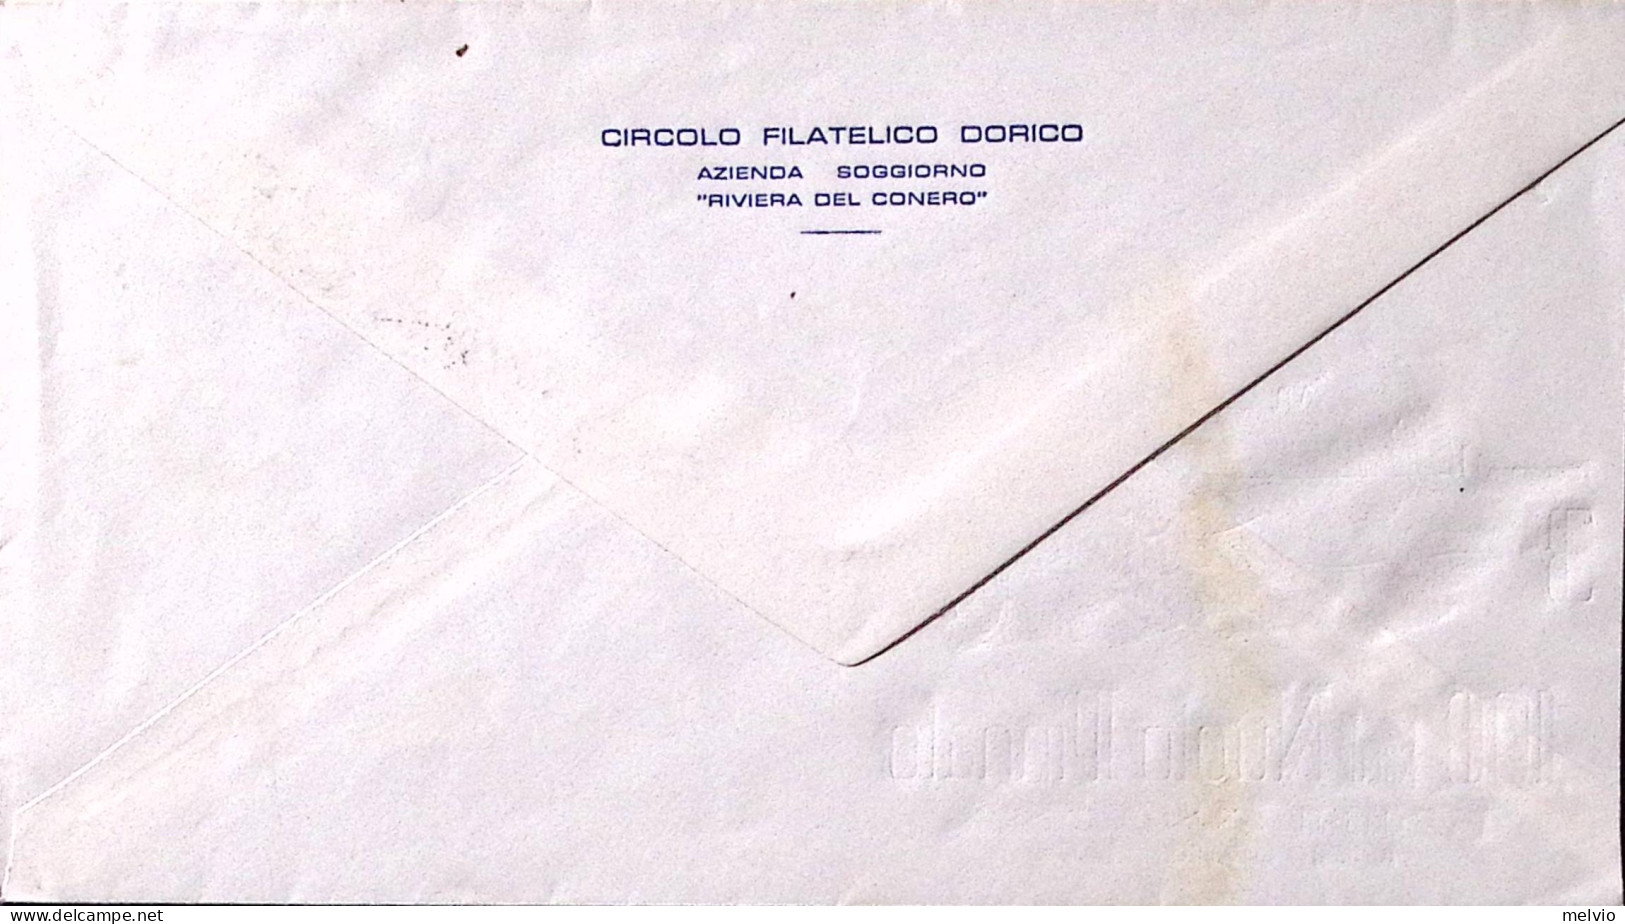 1957-ANCONA III^100 Km. NUOTO PINNATO RIMINI-ANCONA (14.7) Annullo Speciale Su B - Ausstellungen